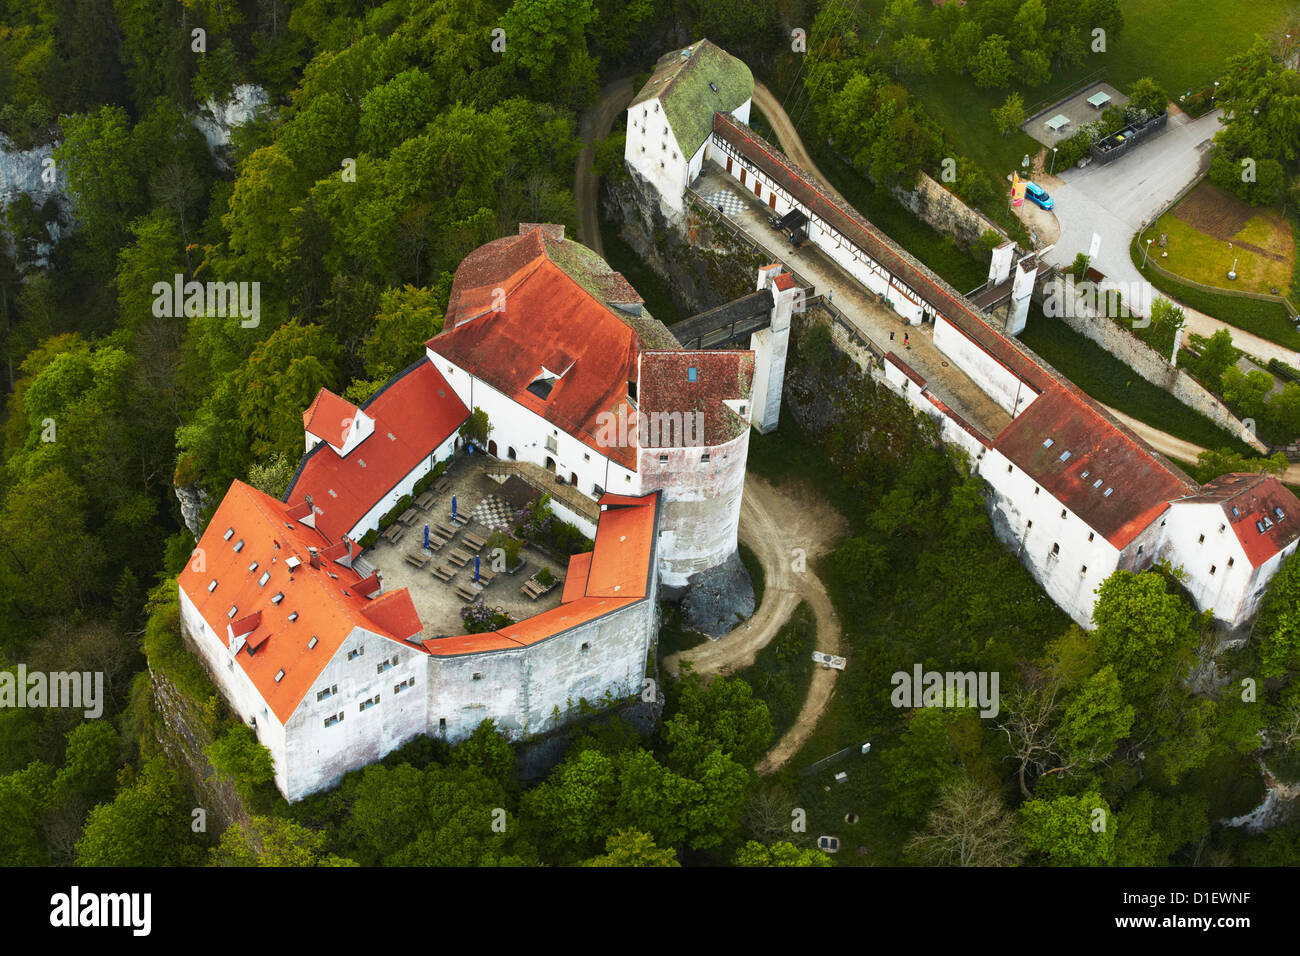 Le Château de Wildenstein, Sigmaringen, Allemagne, photo aérienne Banque D'Images